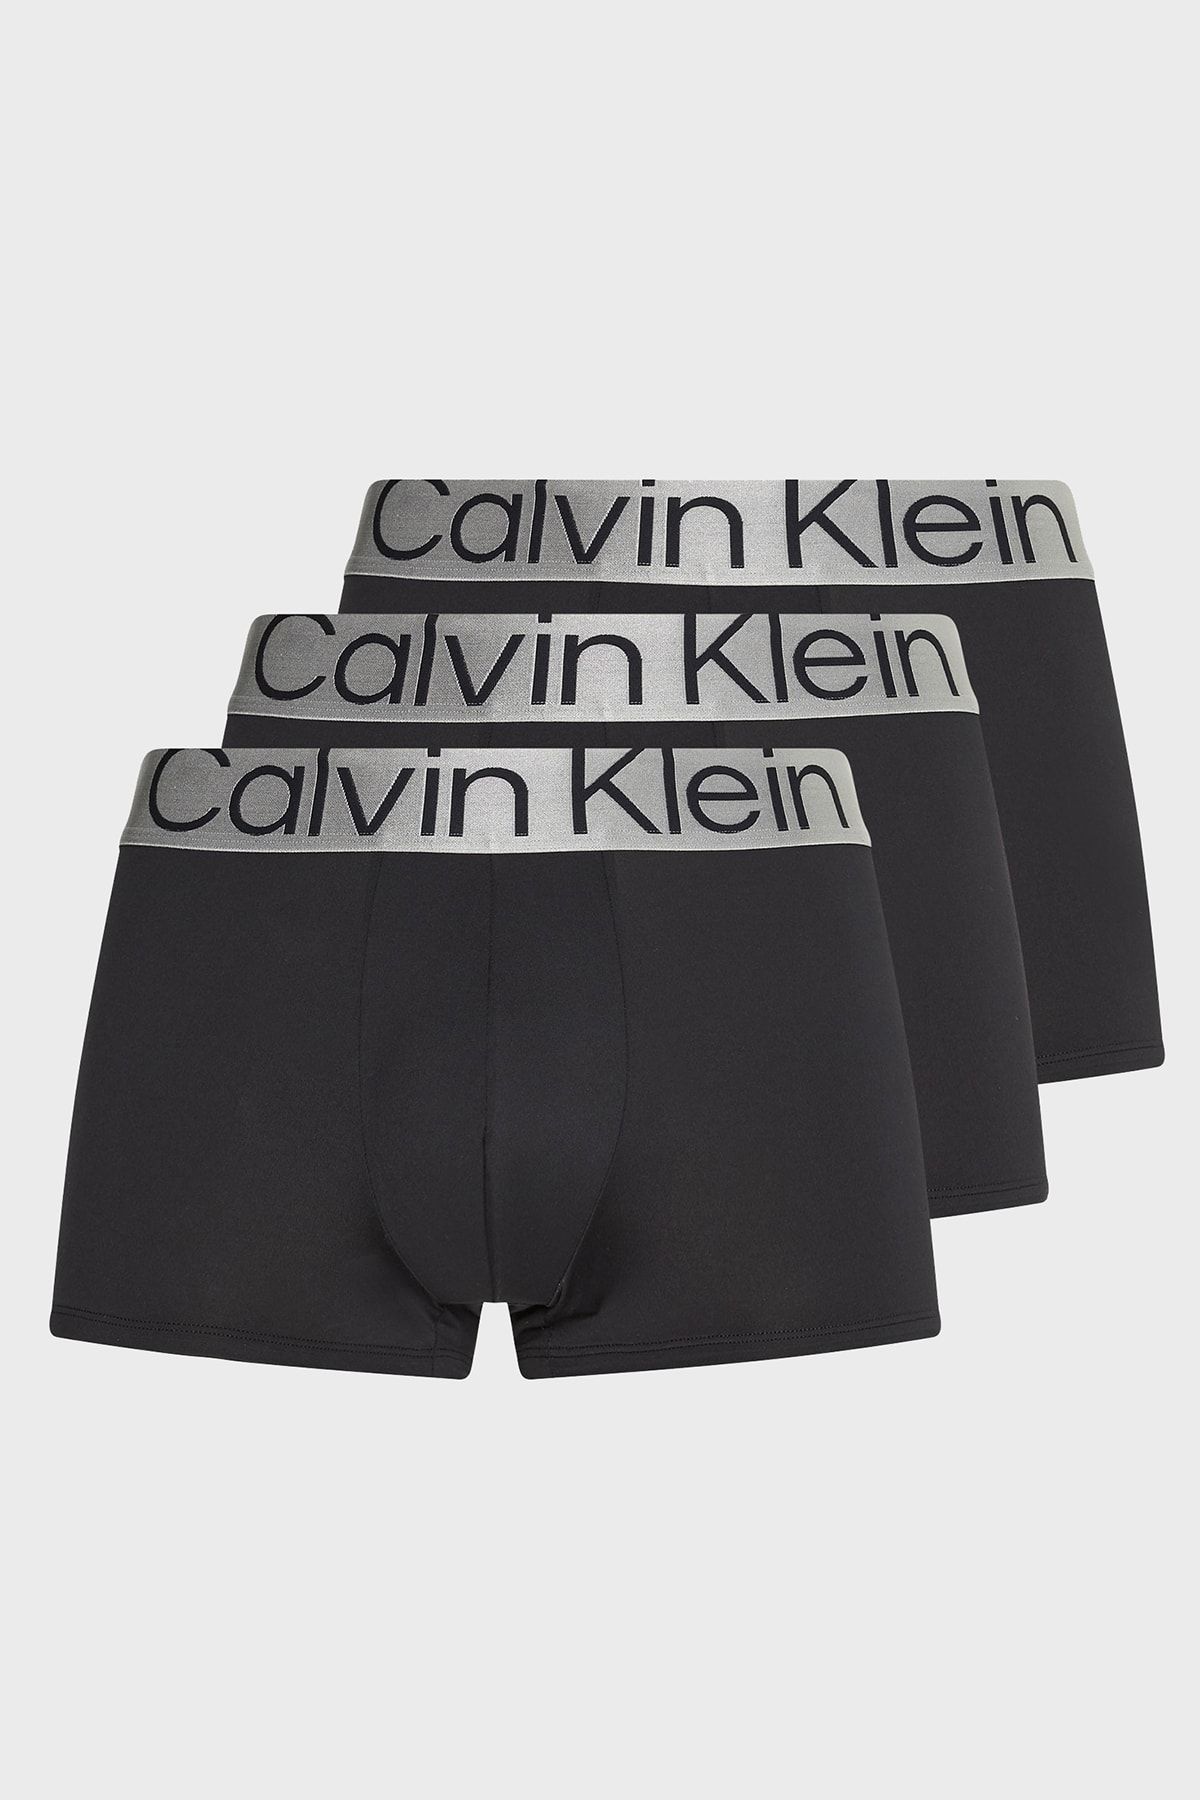 Calvin Klein Erkek Boxer Modelleri, Fiyatları - Trendyol